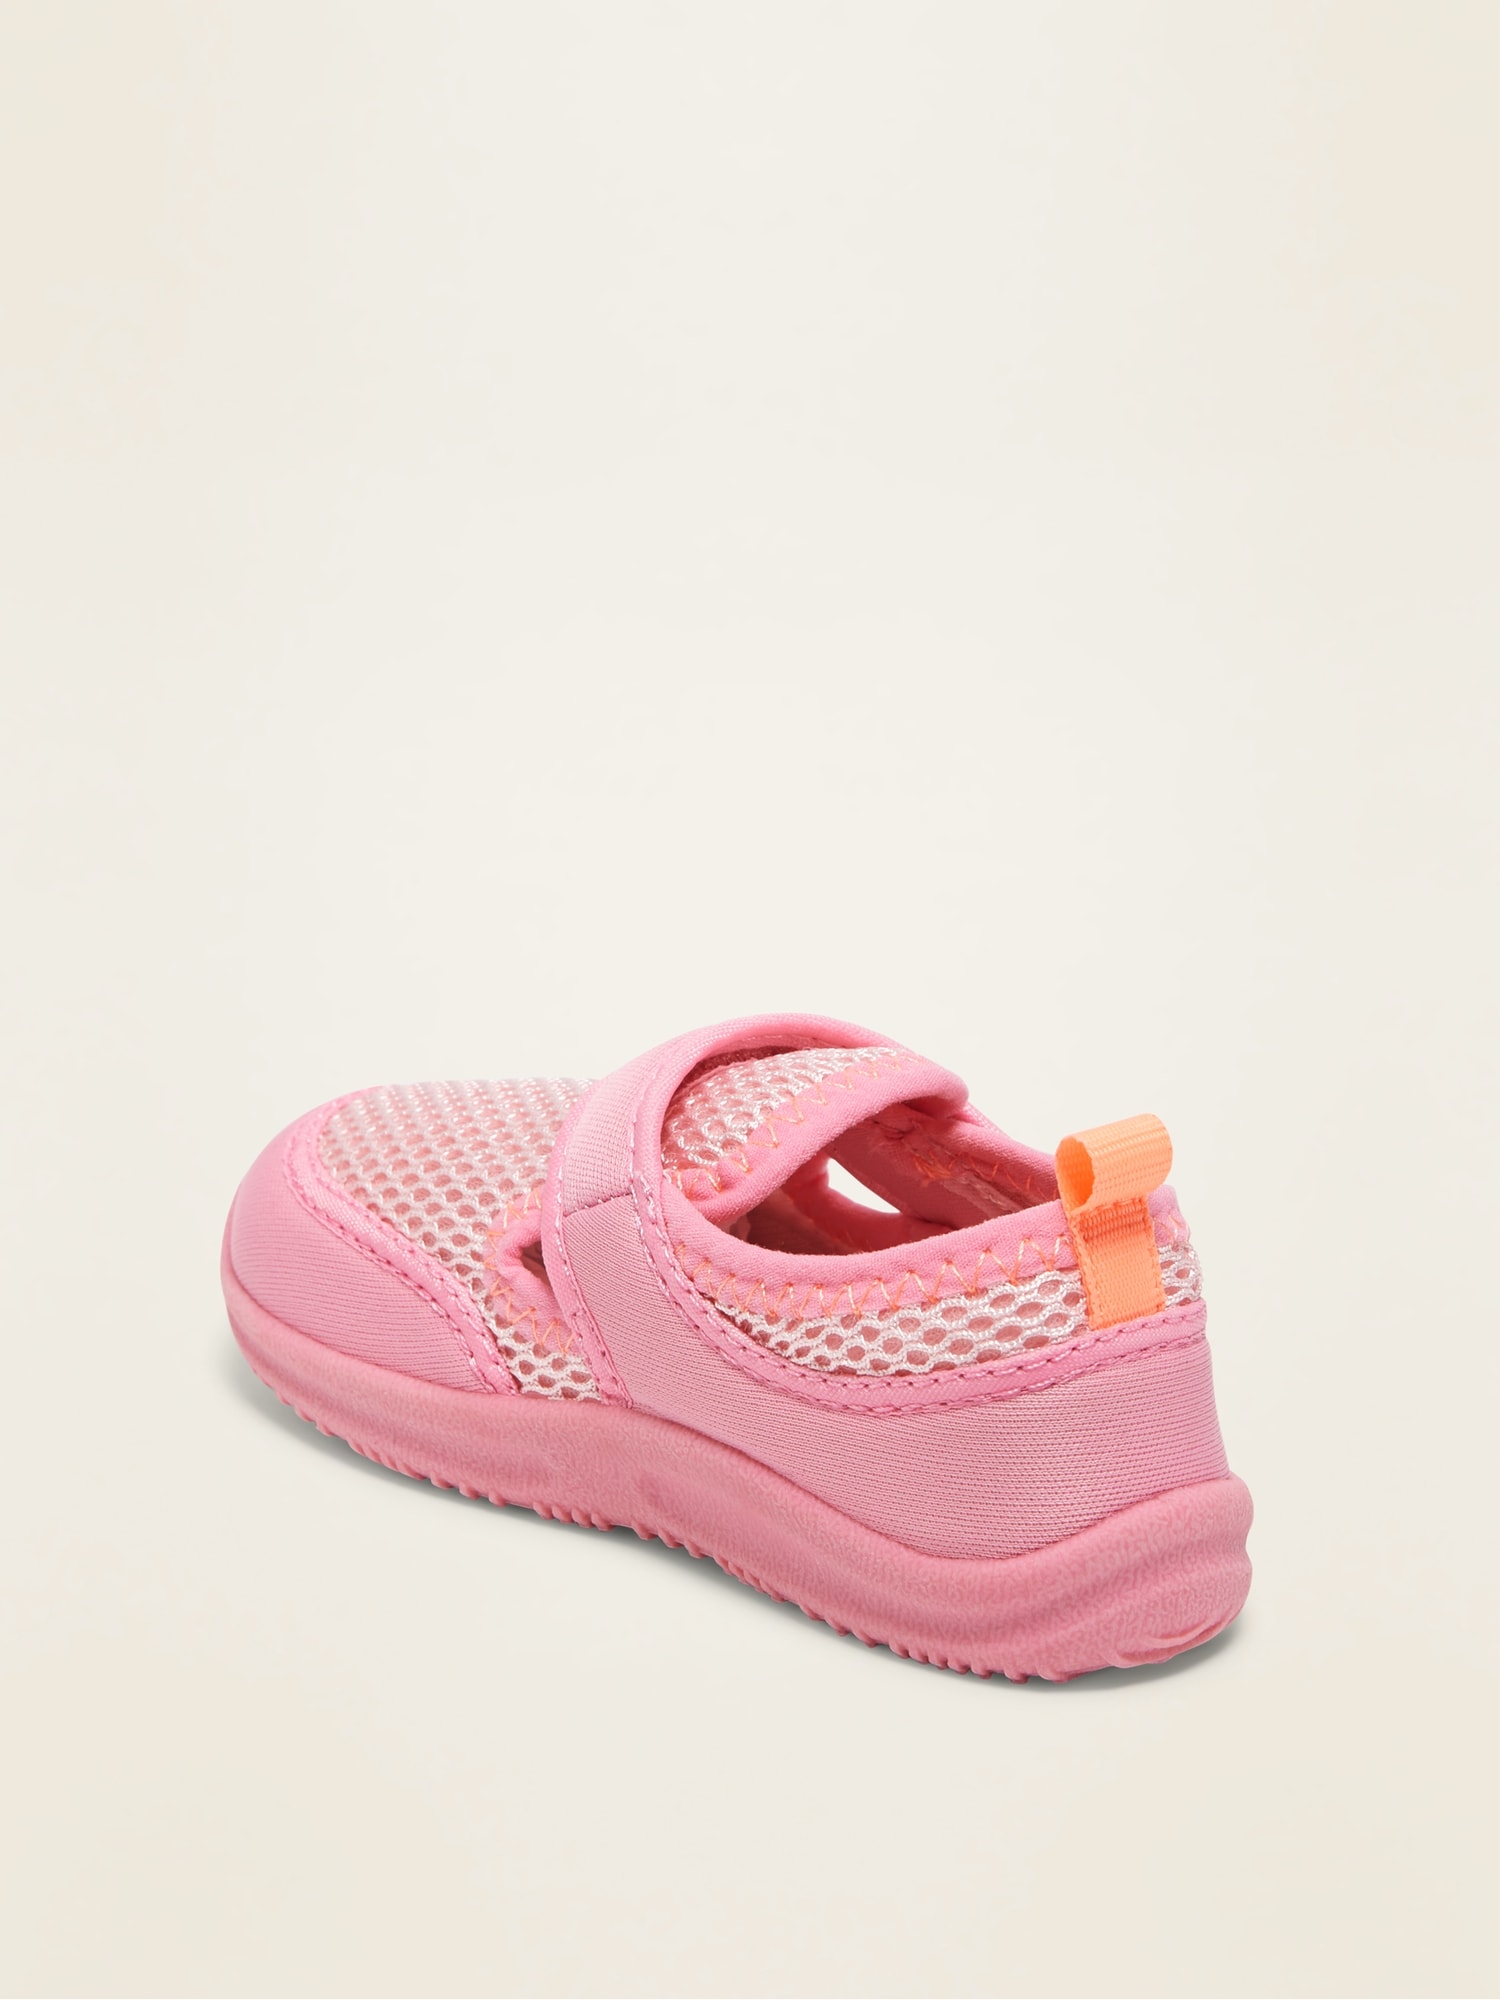 gap shoes toddler girl